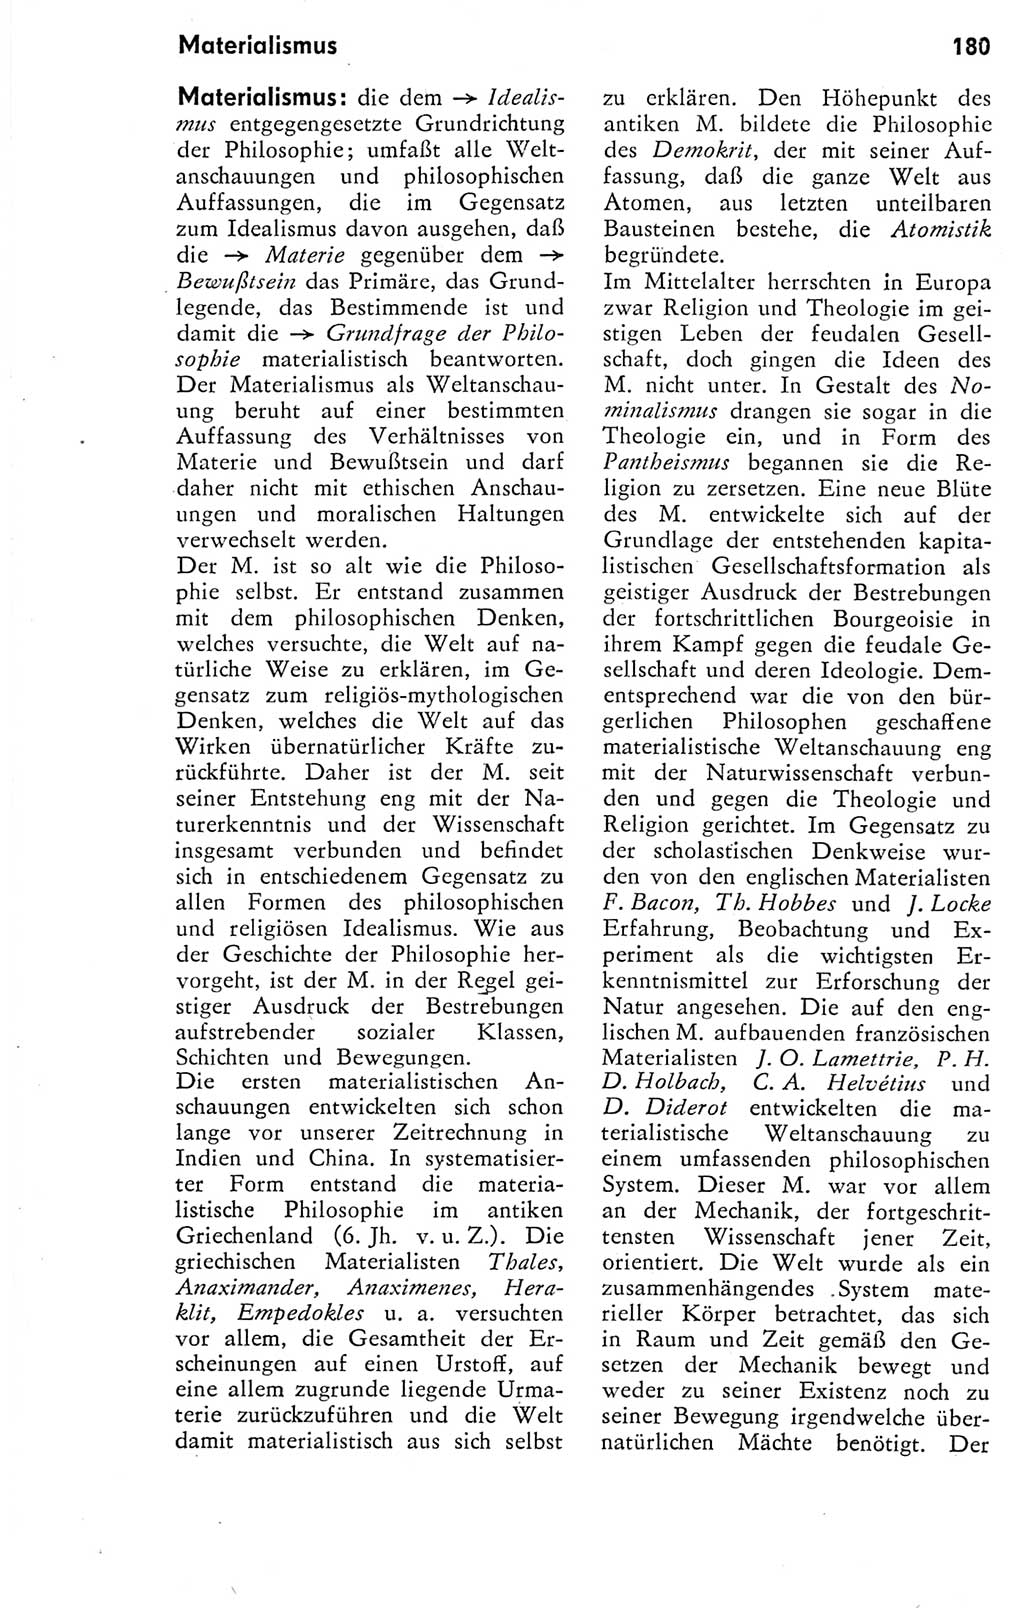 Kleines Wörterbuch der marxistisch-leninistischen Philosophie [Deutsche Demokratische Republik (DDR)] 1974, Seite 183 (Kl. Wb. ML Phil. DDR 1974, S. 183)